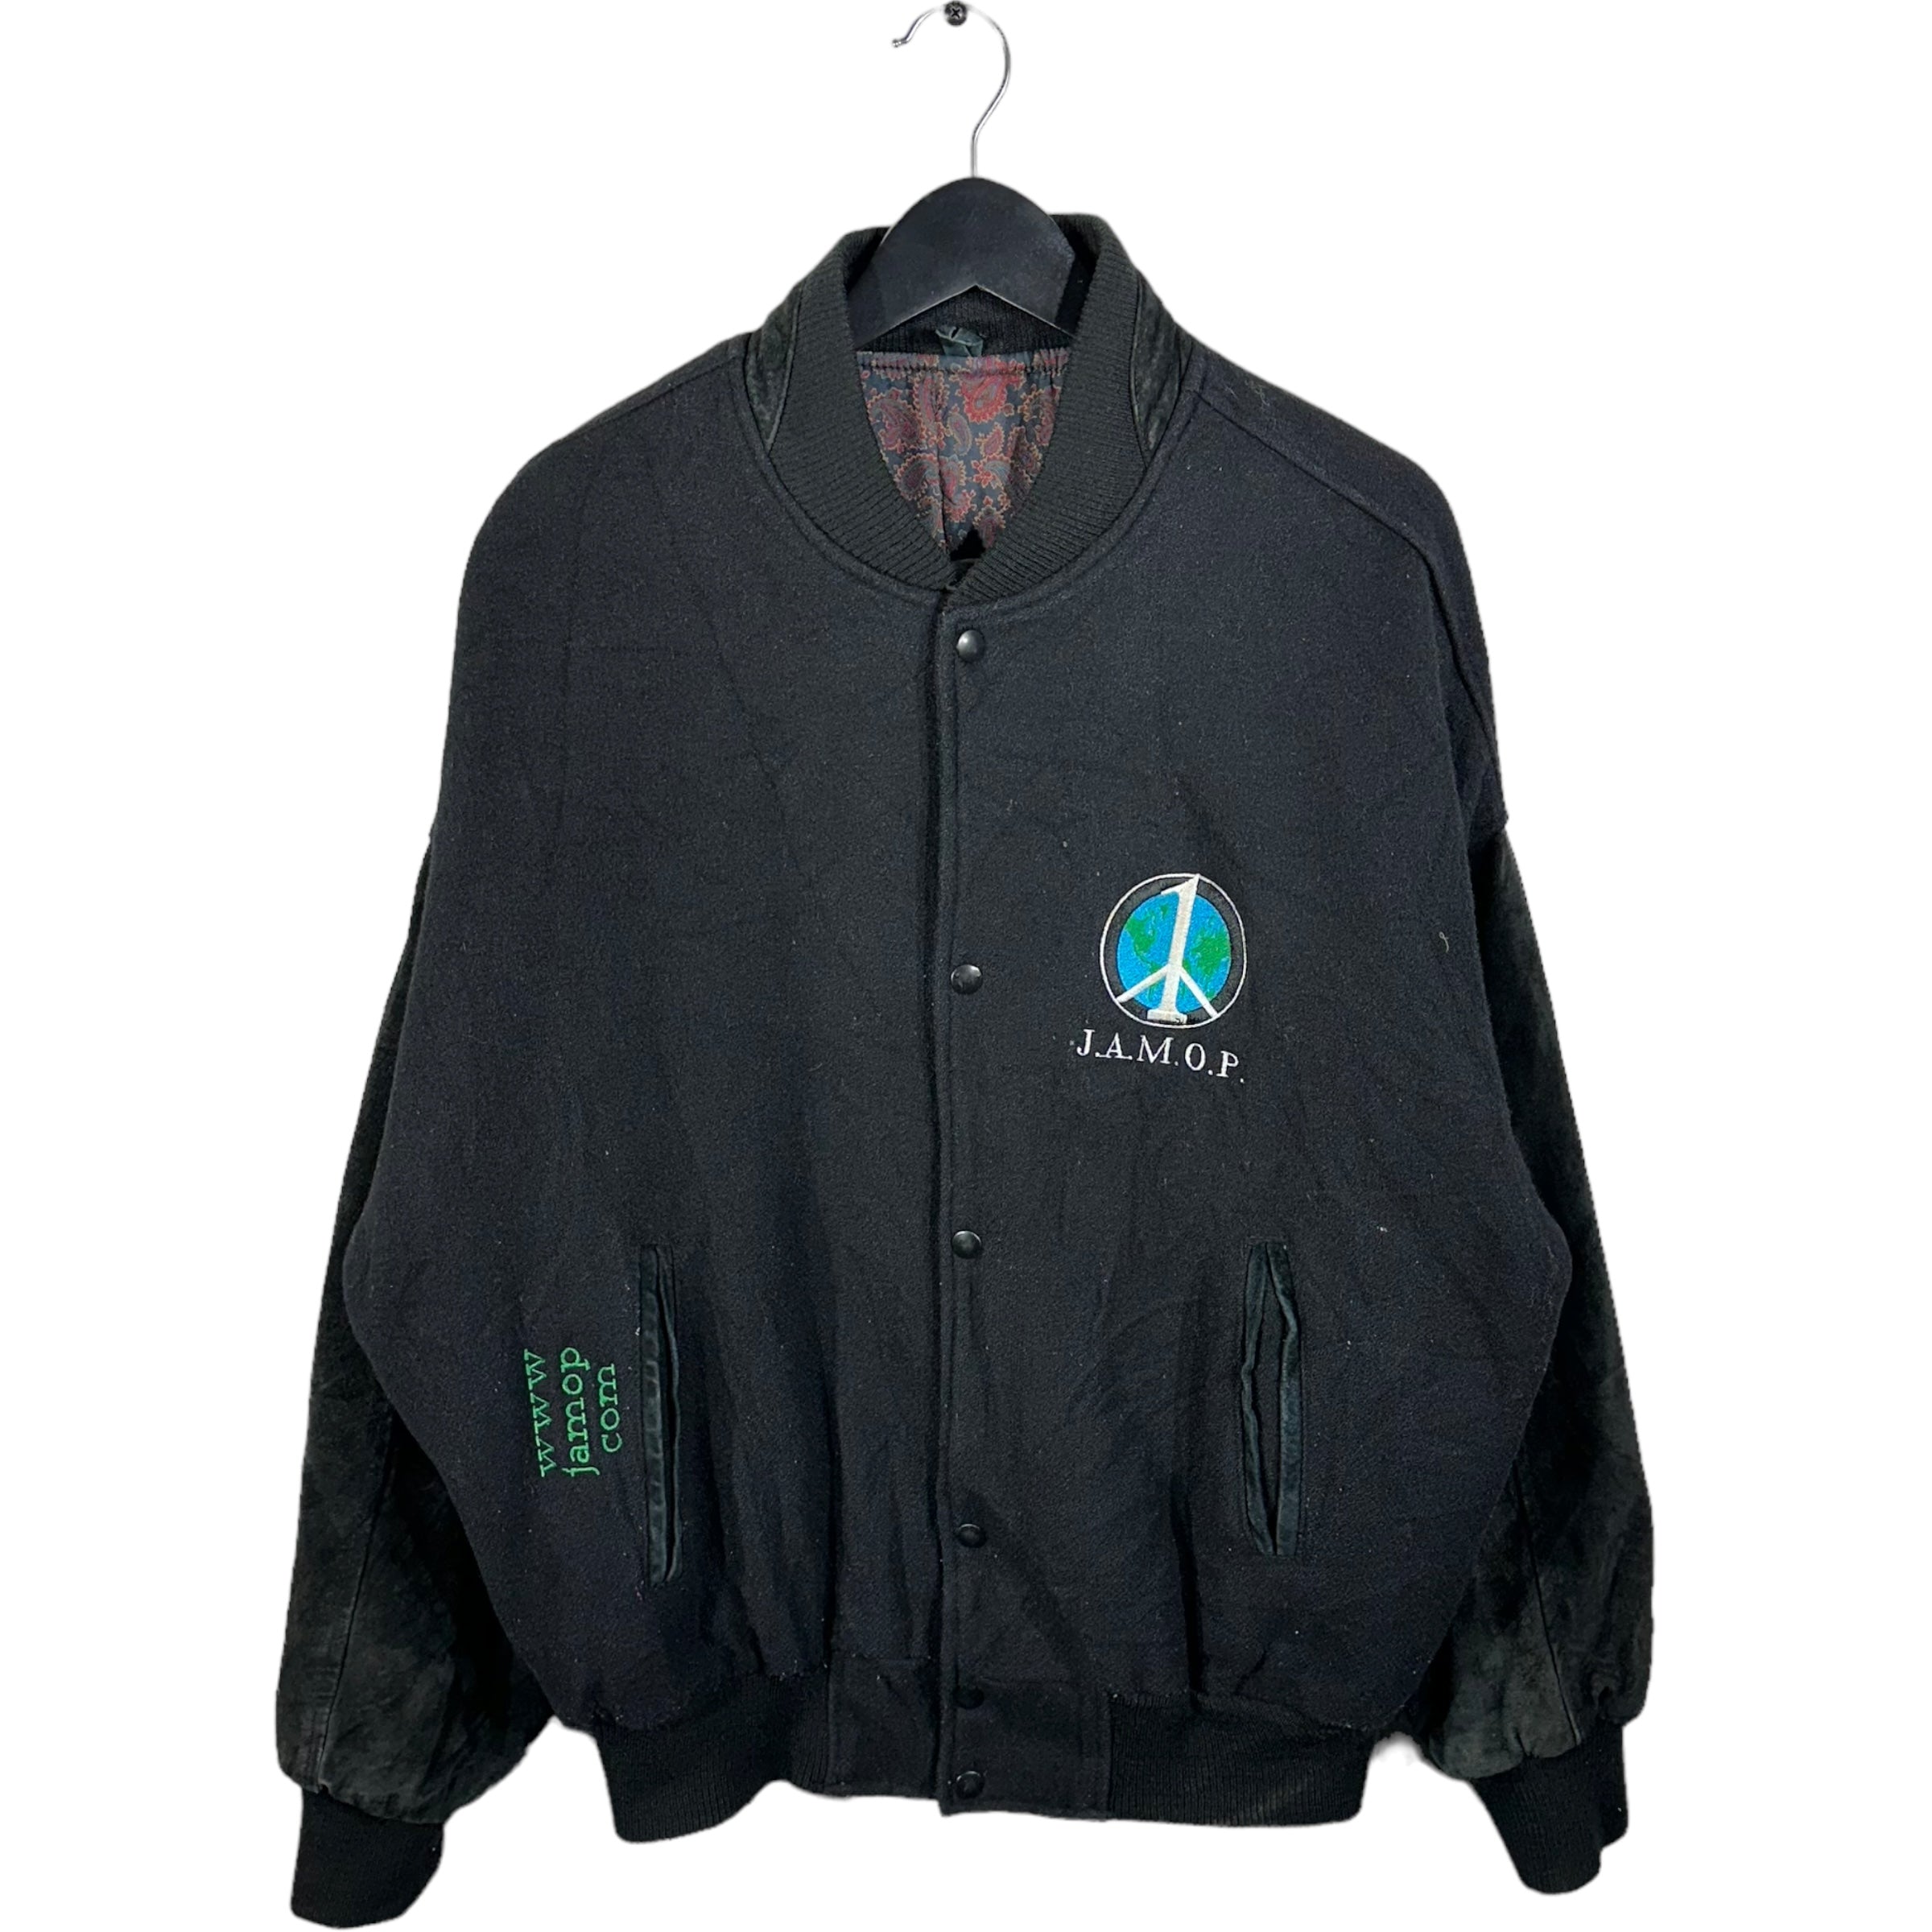 Vintage J.A.M.O.P. Varsity Jacket 1999